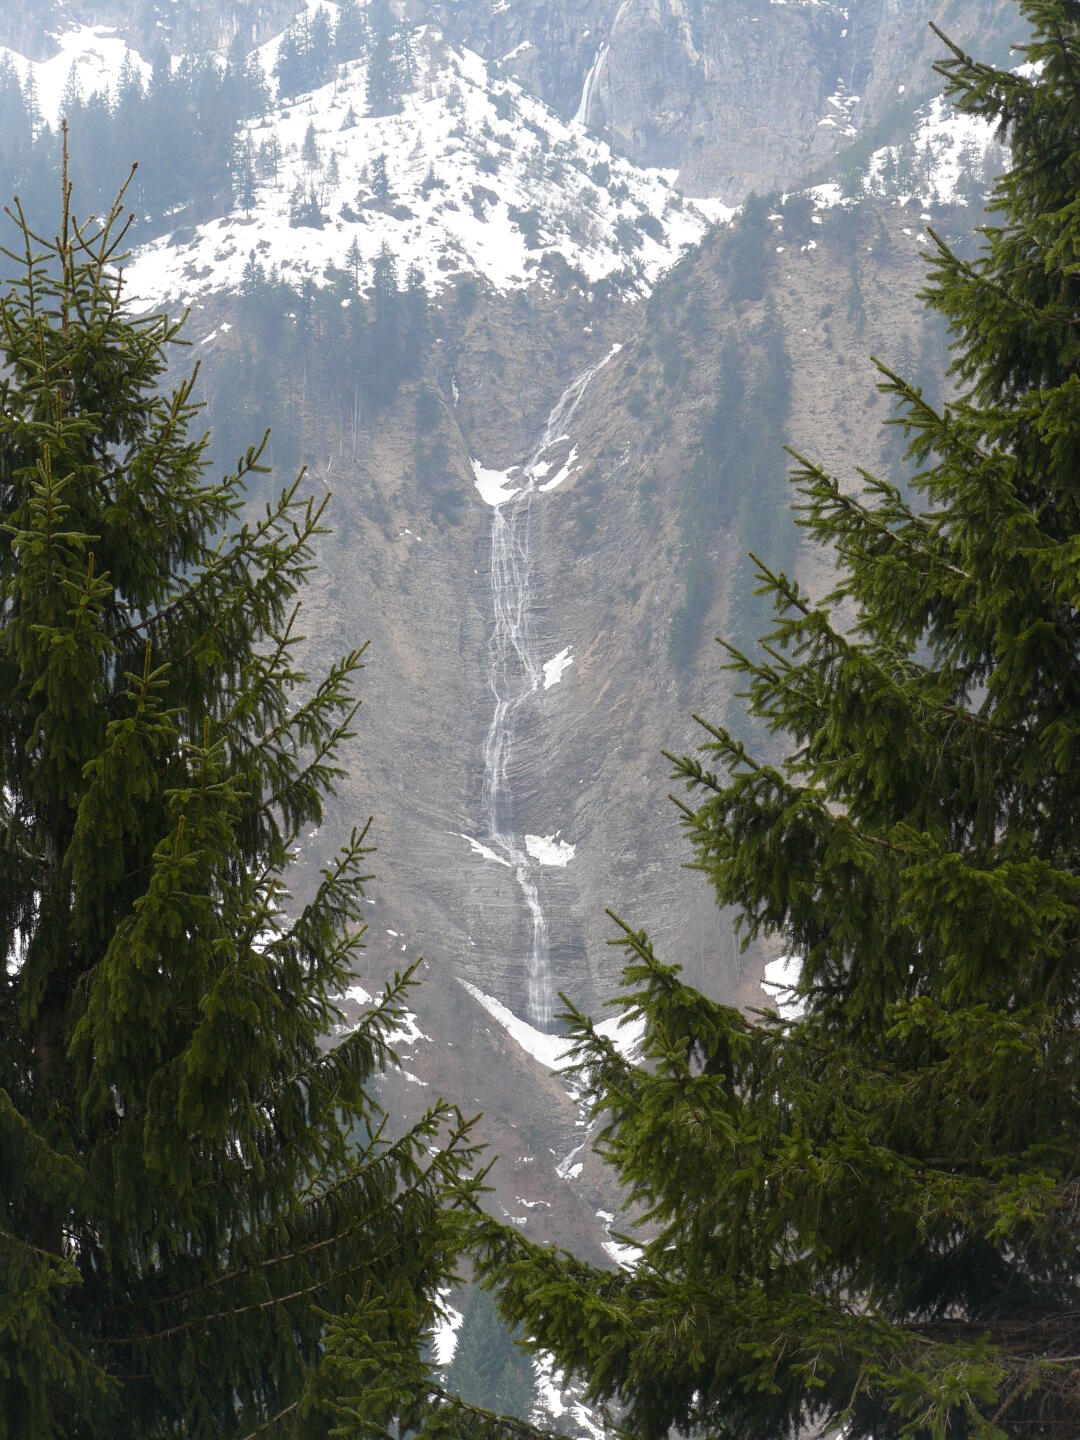 Schmelzwasser fließt über mehere hundert Höhenmeter hinweg in einer Reihe von Wasserfällen Richtung Bregenzerach.